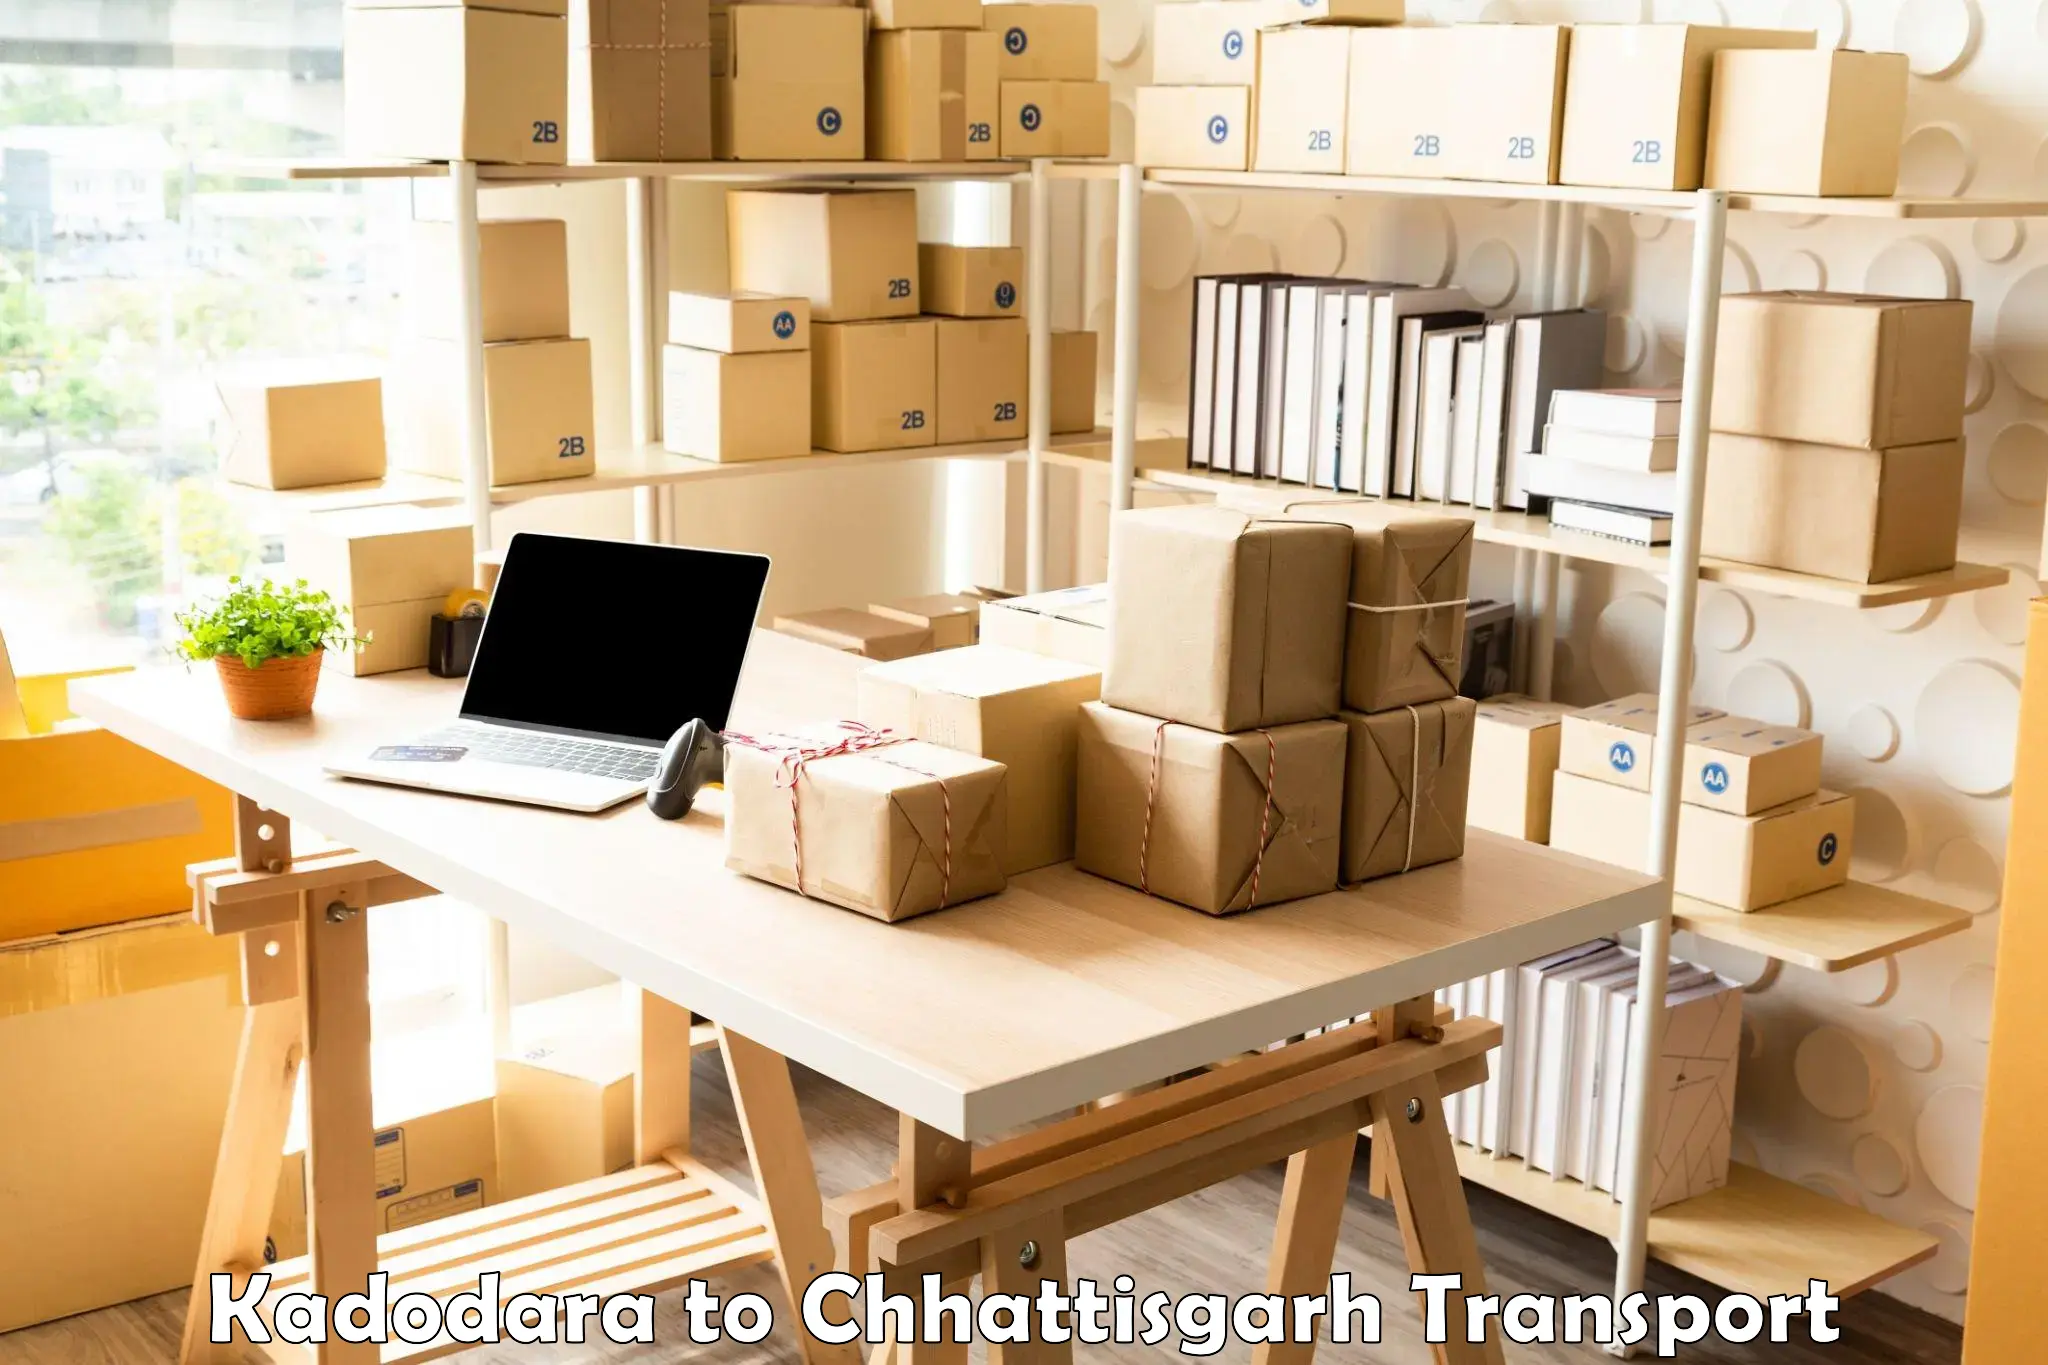 Furniture transport service Kadodara to Chirimiri